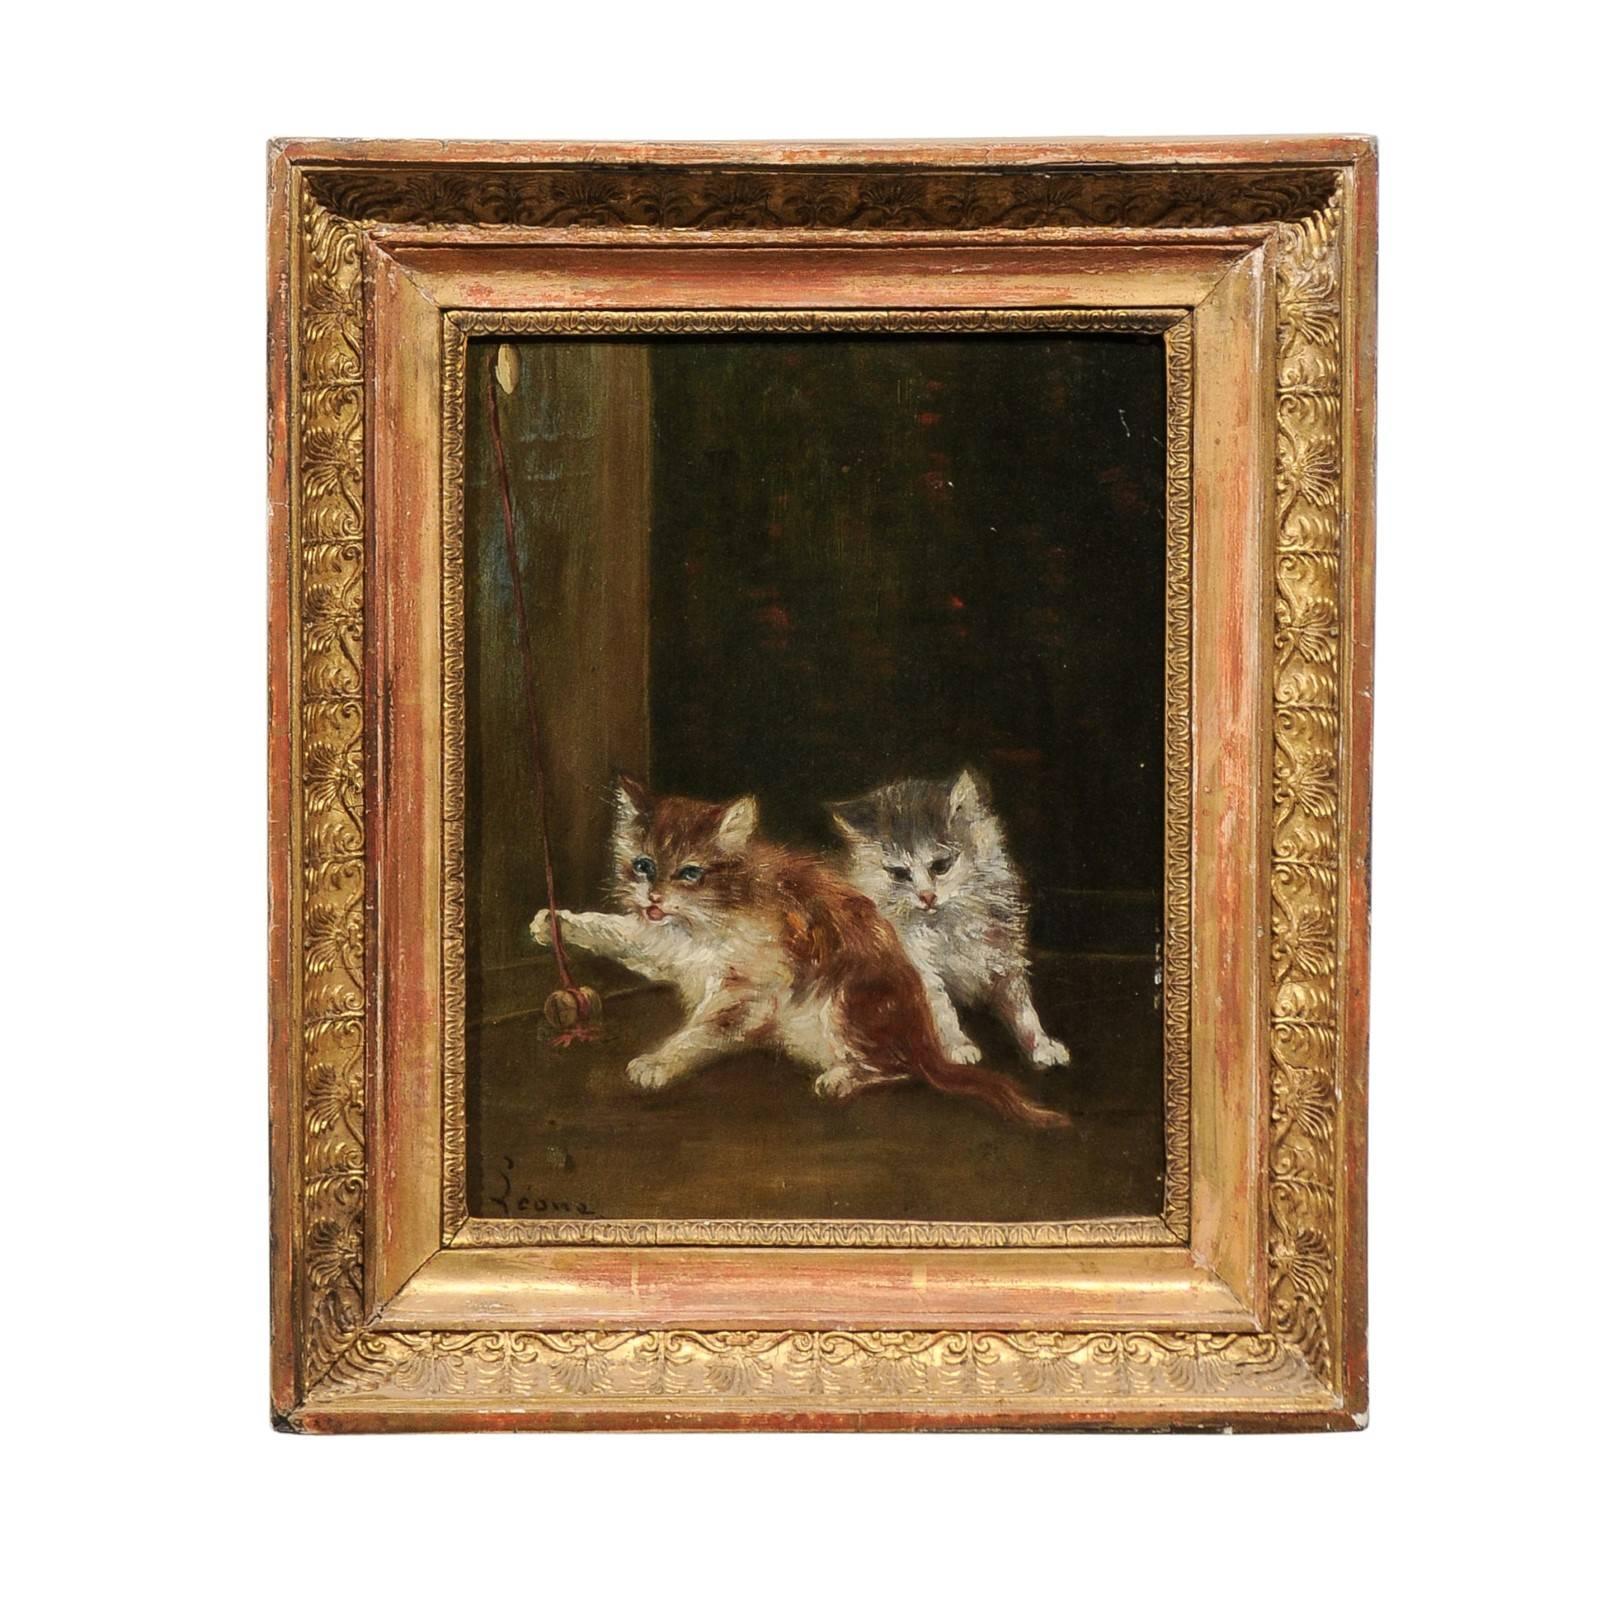 Gemälde in Öl auf Leinwand mit spielenden Kitten aus den 1890er Jahren in vergoldetem Holzrahmen